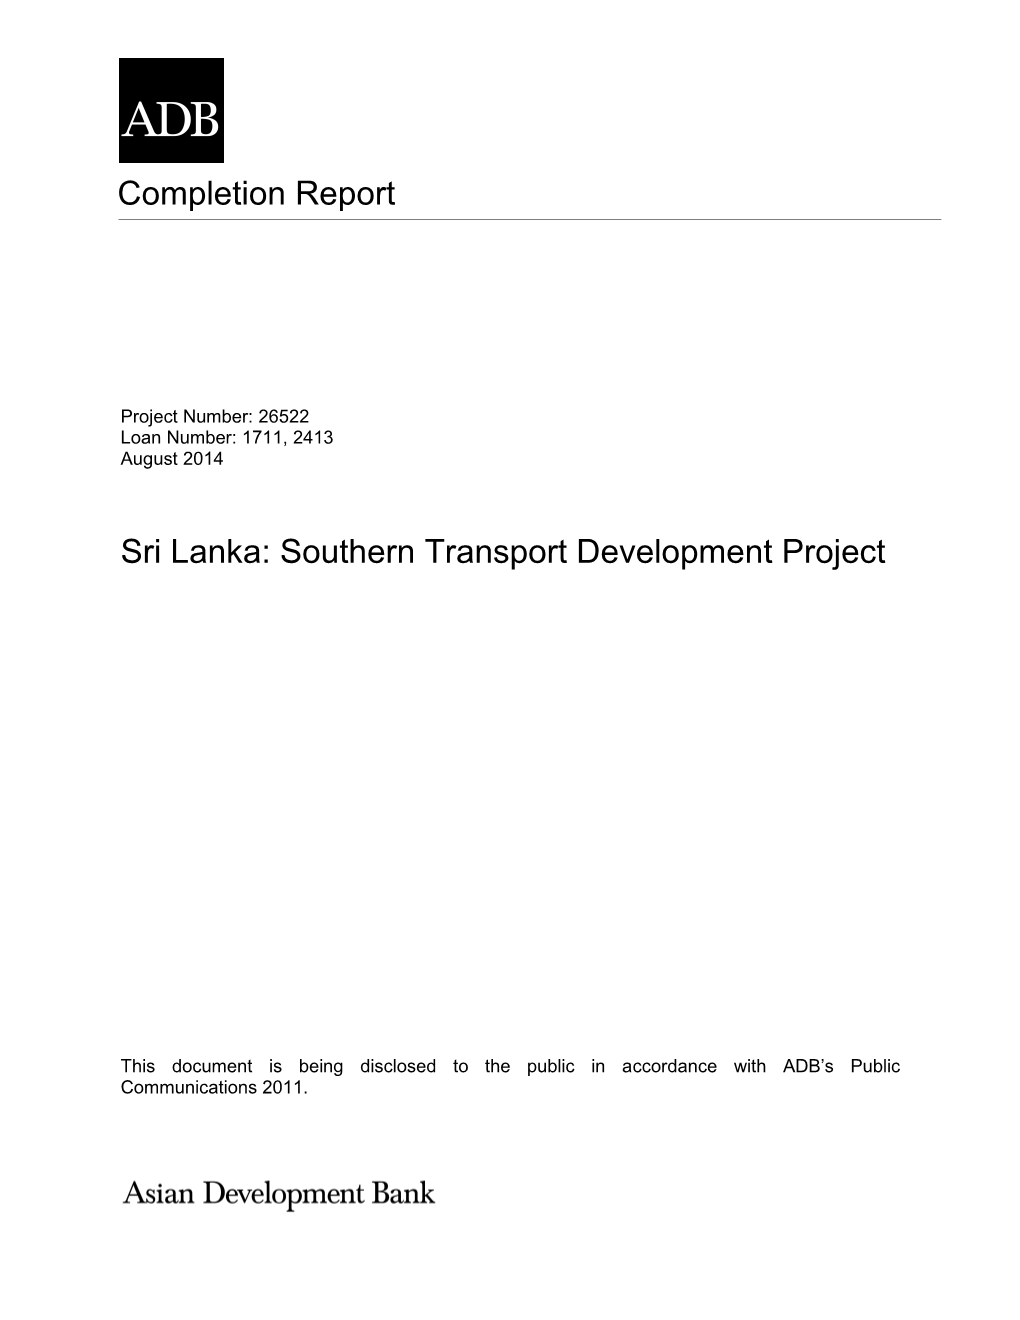 Sri Lanka: Southern Transport Development Project